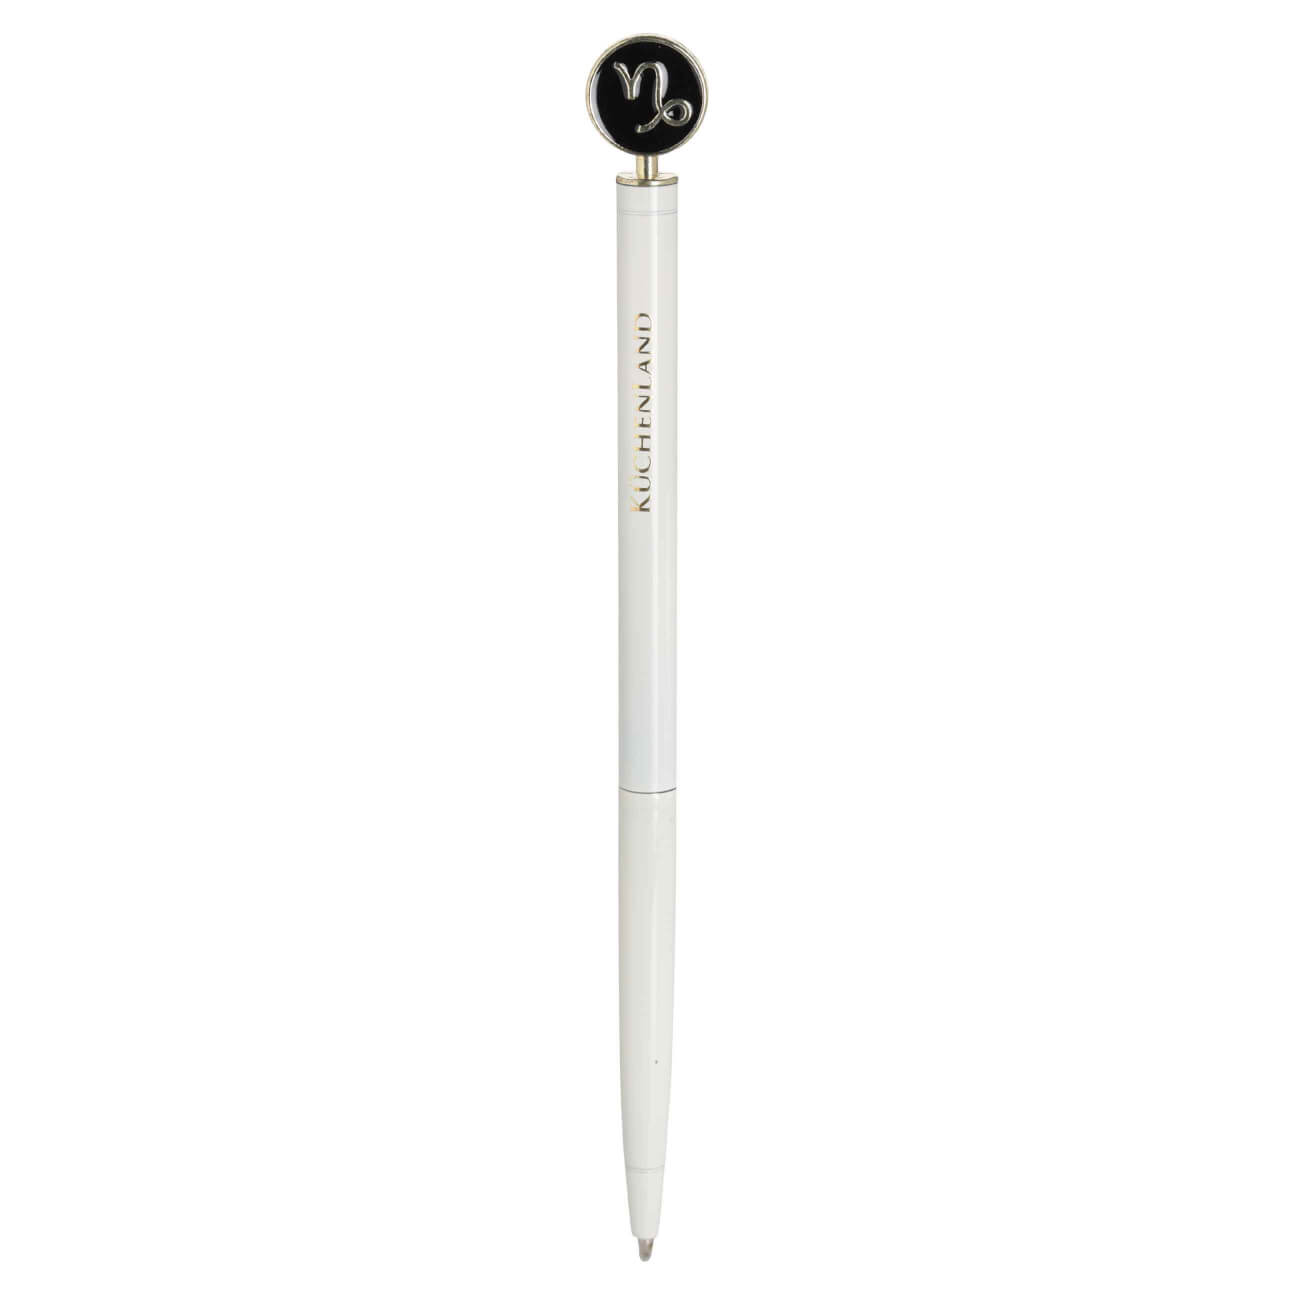 Ручка шариковая, 15 см, с фигуркой, сталь, молочно-золотистая, Козерог, Zodiac ручка скоба cappio м о 128 мм хром